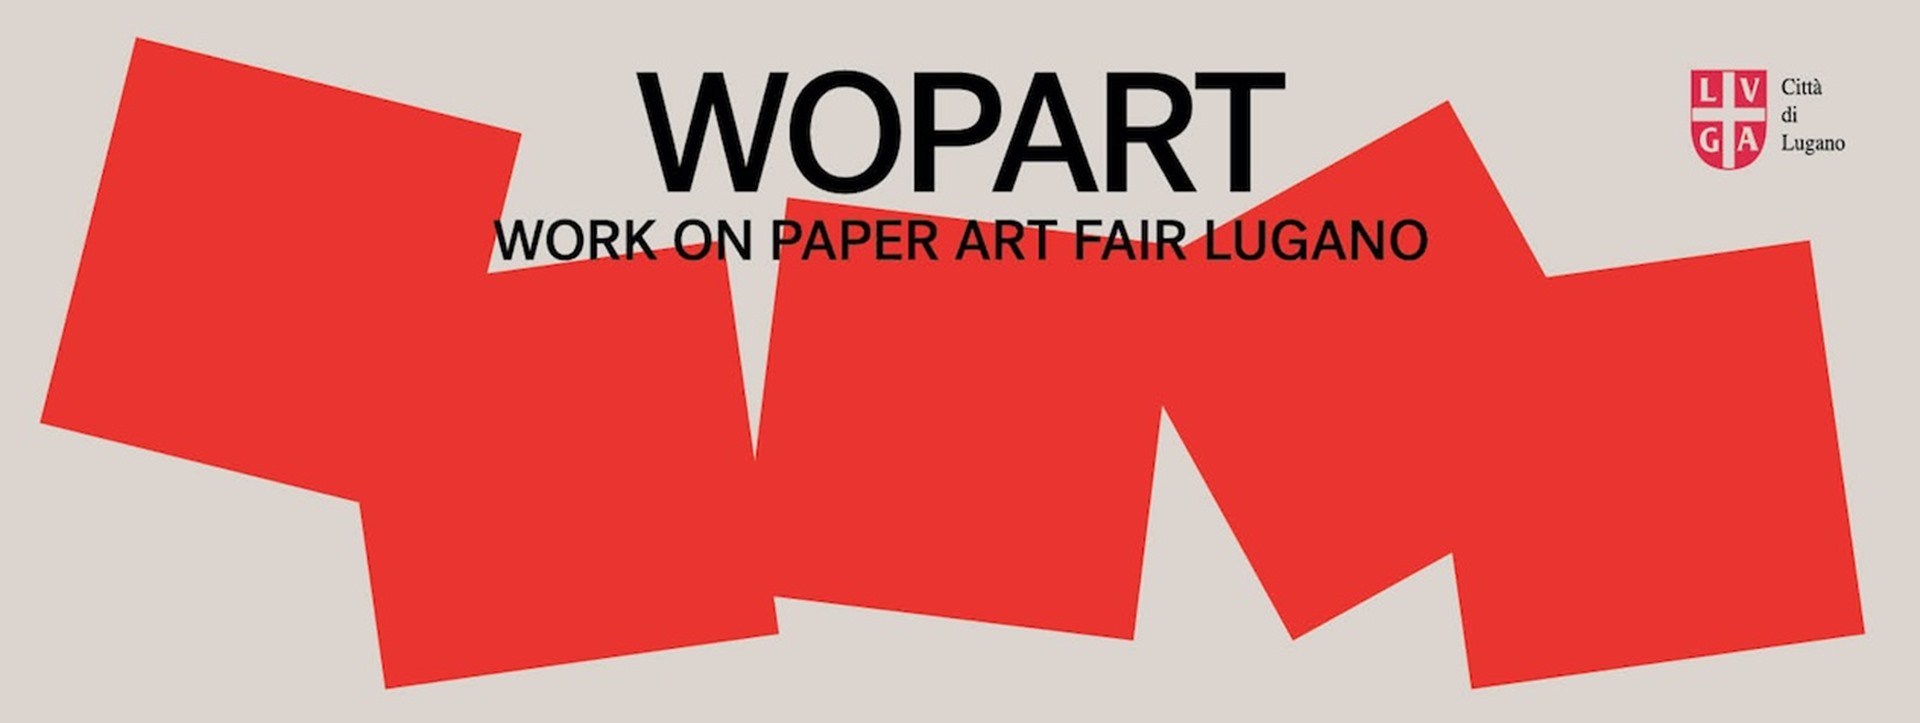 WOPART – Work on Paper Art Fair